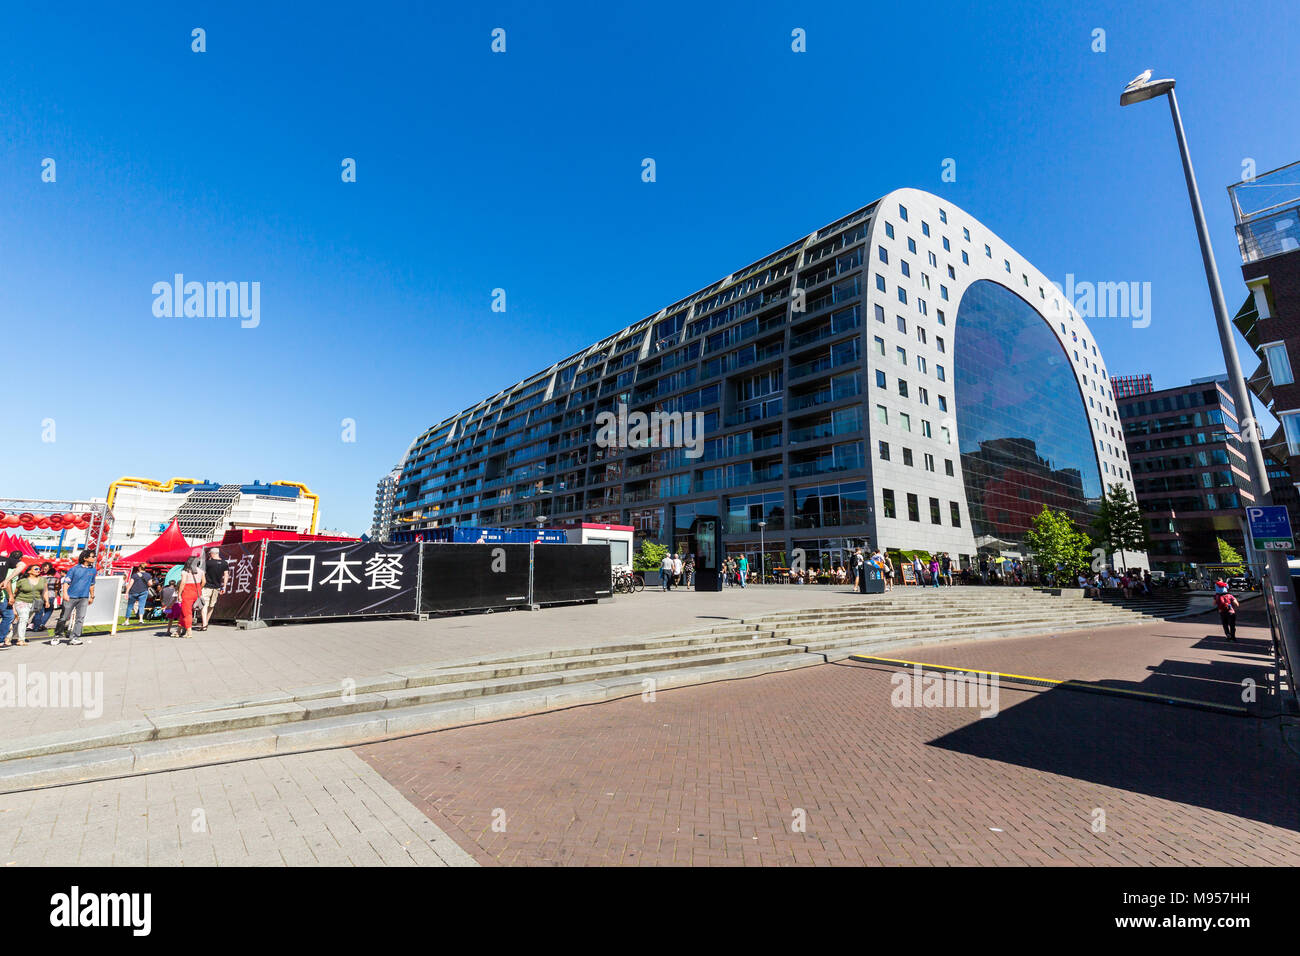 ROTTERDAM, Paesi Bassi - 25 Maggio 2017: vista esterna del Mercato coperto in una zona residenziale ed edificio di uffici il 25 maggio 2017. L'edificio è stato aperto sul Foto Stock